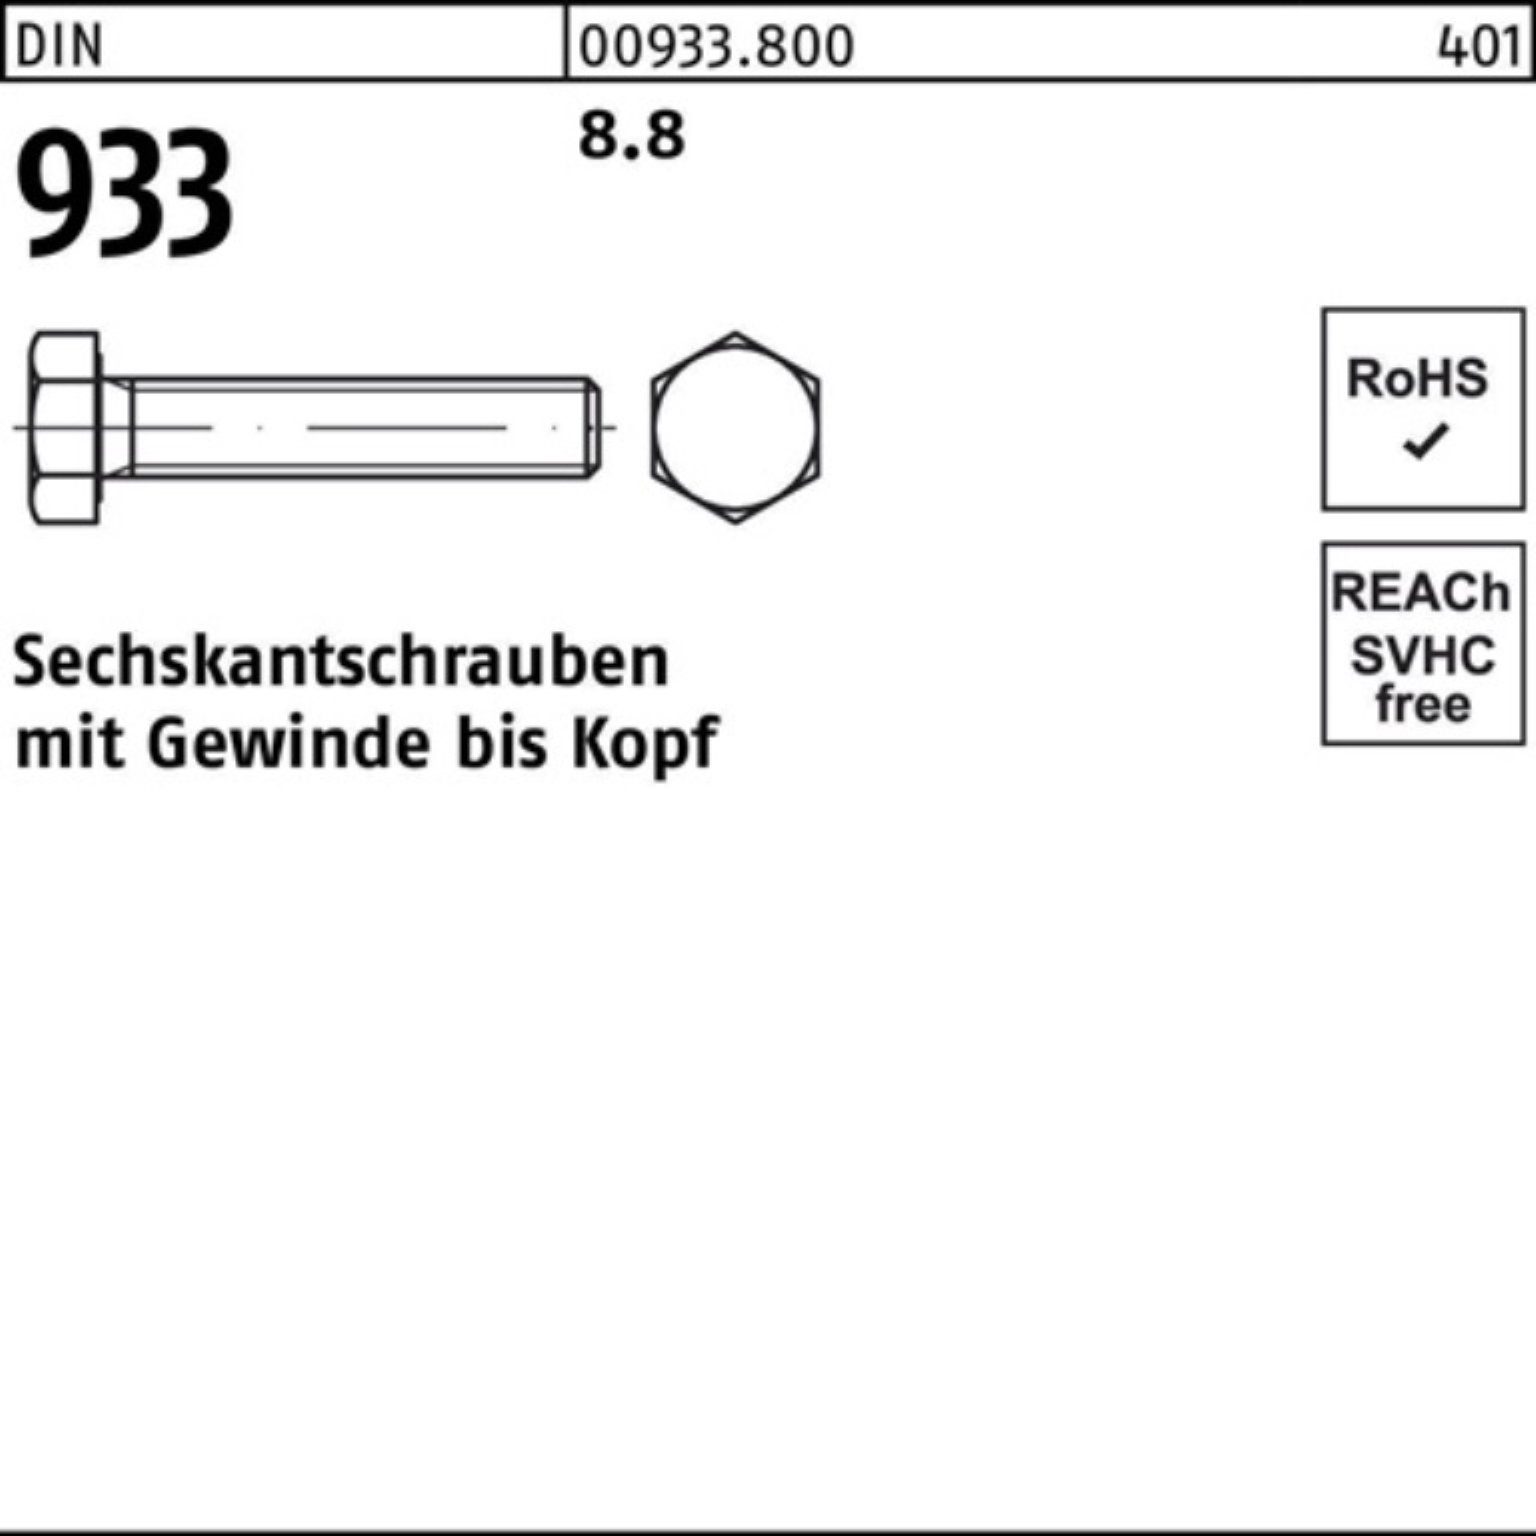 Sechskantschraube M20x DIN VG Pack 933 Reyher 25 100er Sechskantschraube 933 Stück DIN 80 8.8